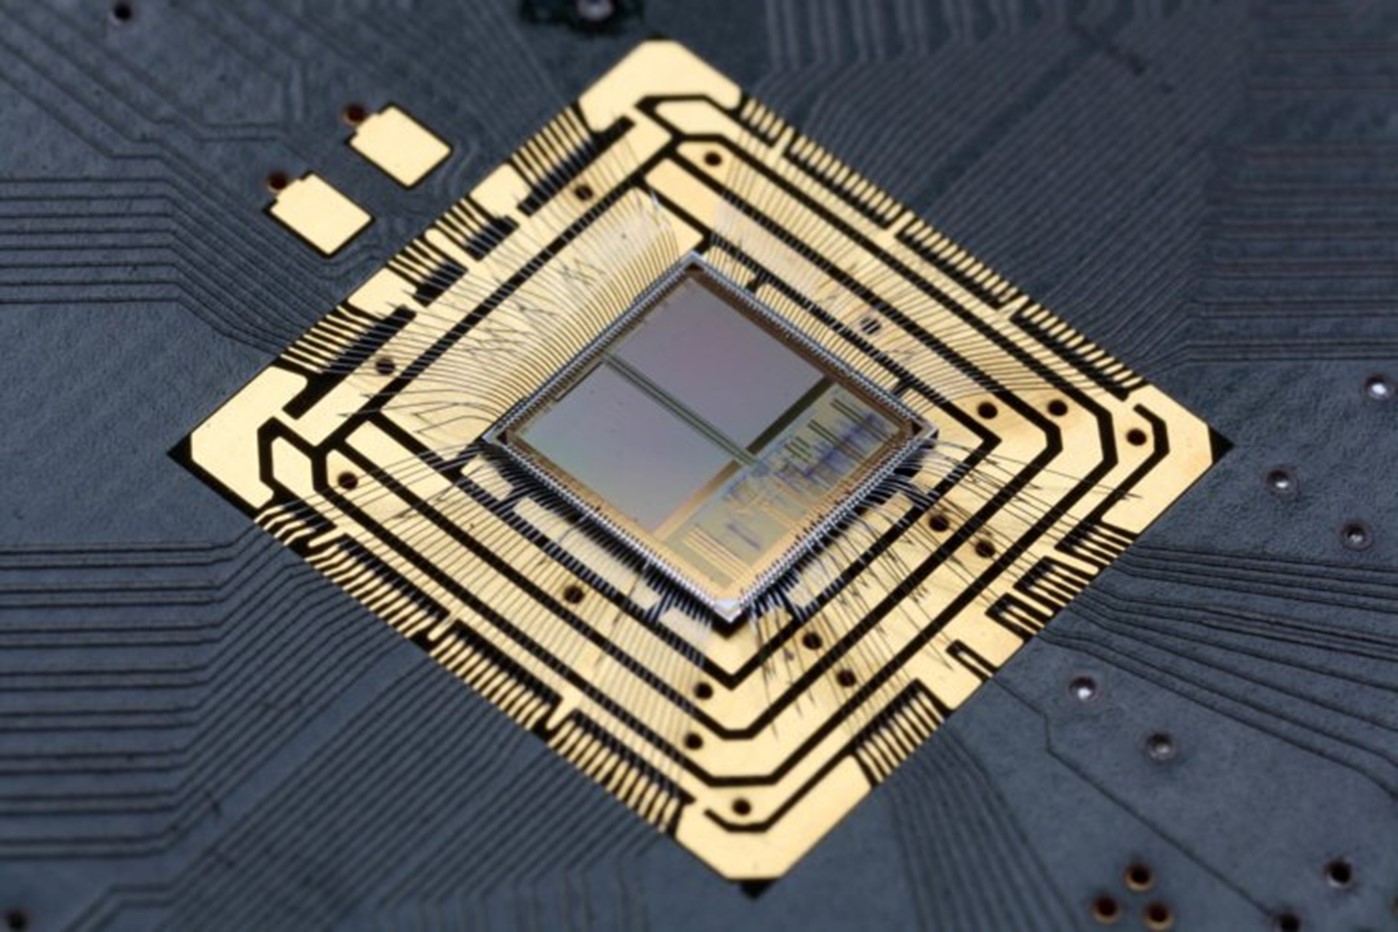 NorthPole: энергоэффективный процессор от IBM для ИИ-приложений с 22 млрд транзисторов. Возможности чипа - 4